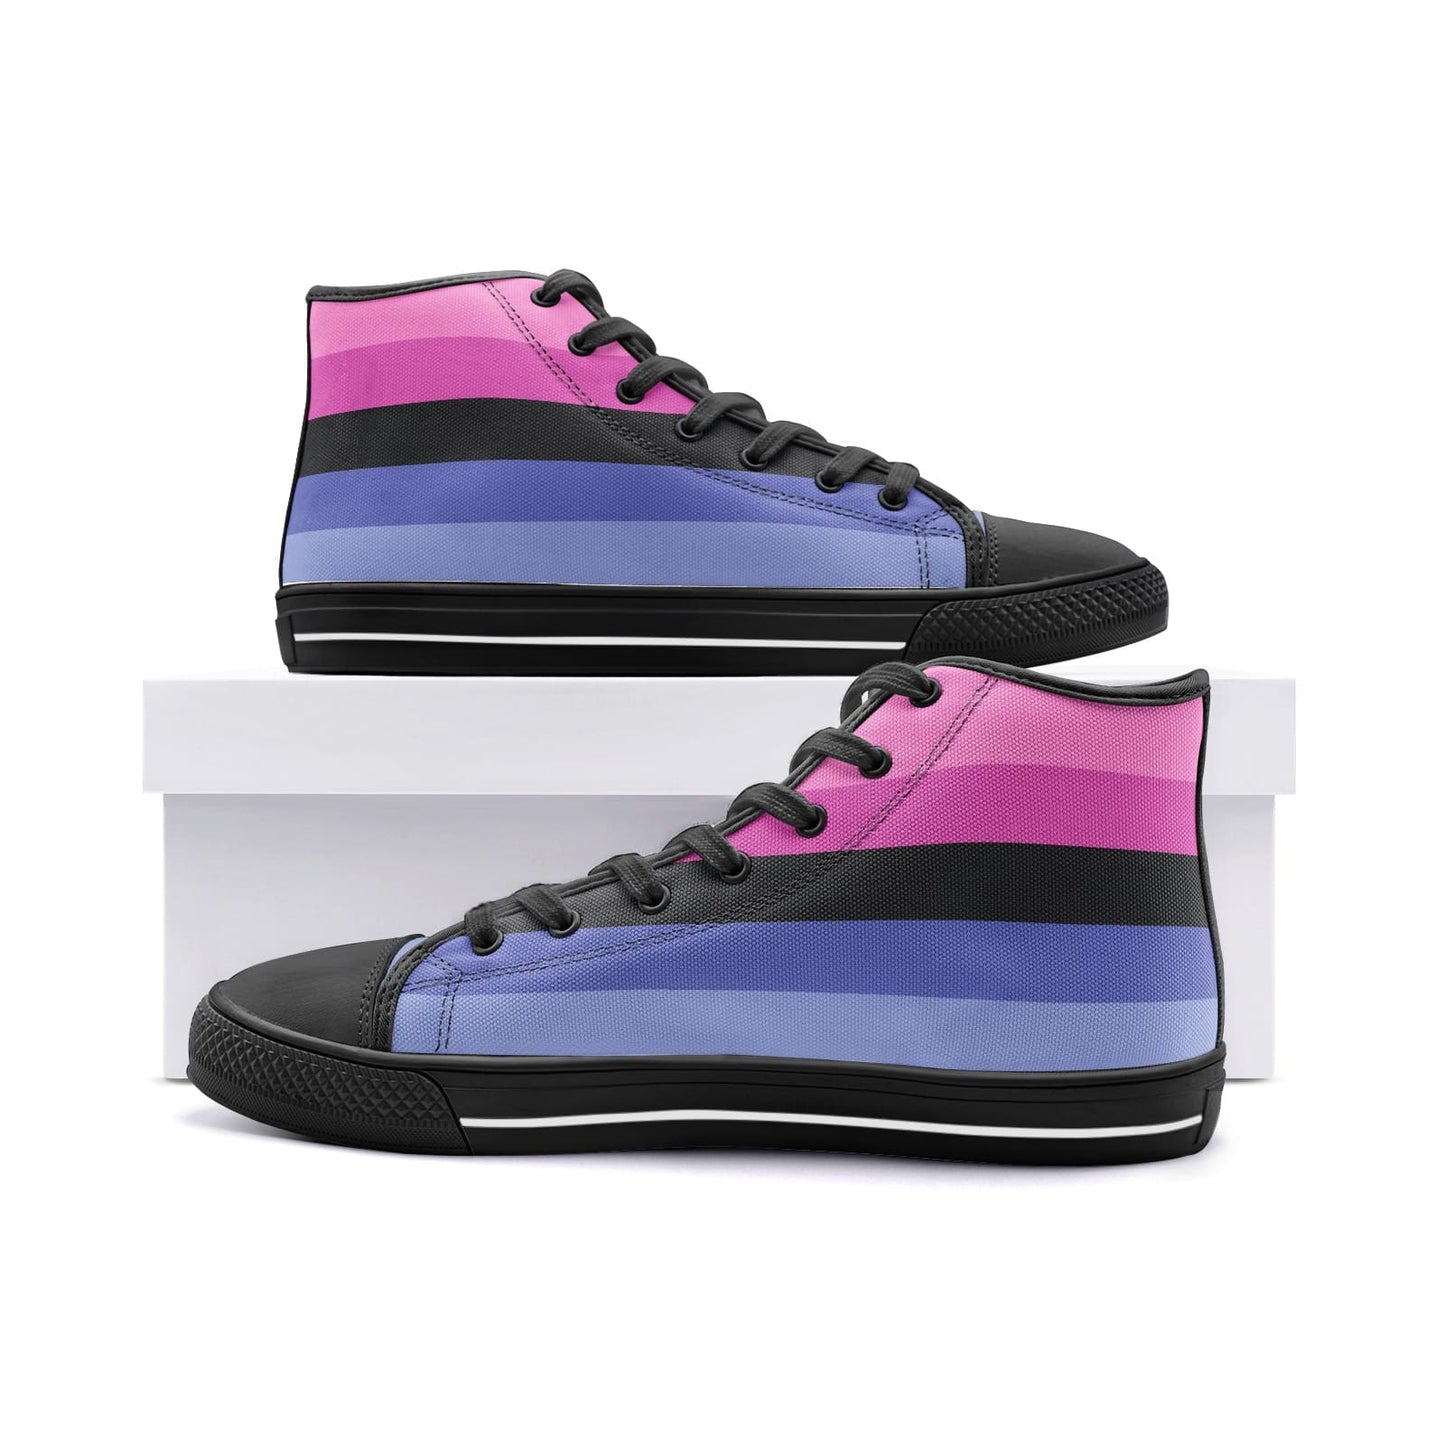 omnisexual shoes, omni pride flag sneakers, black